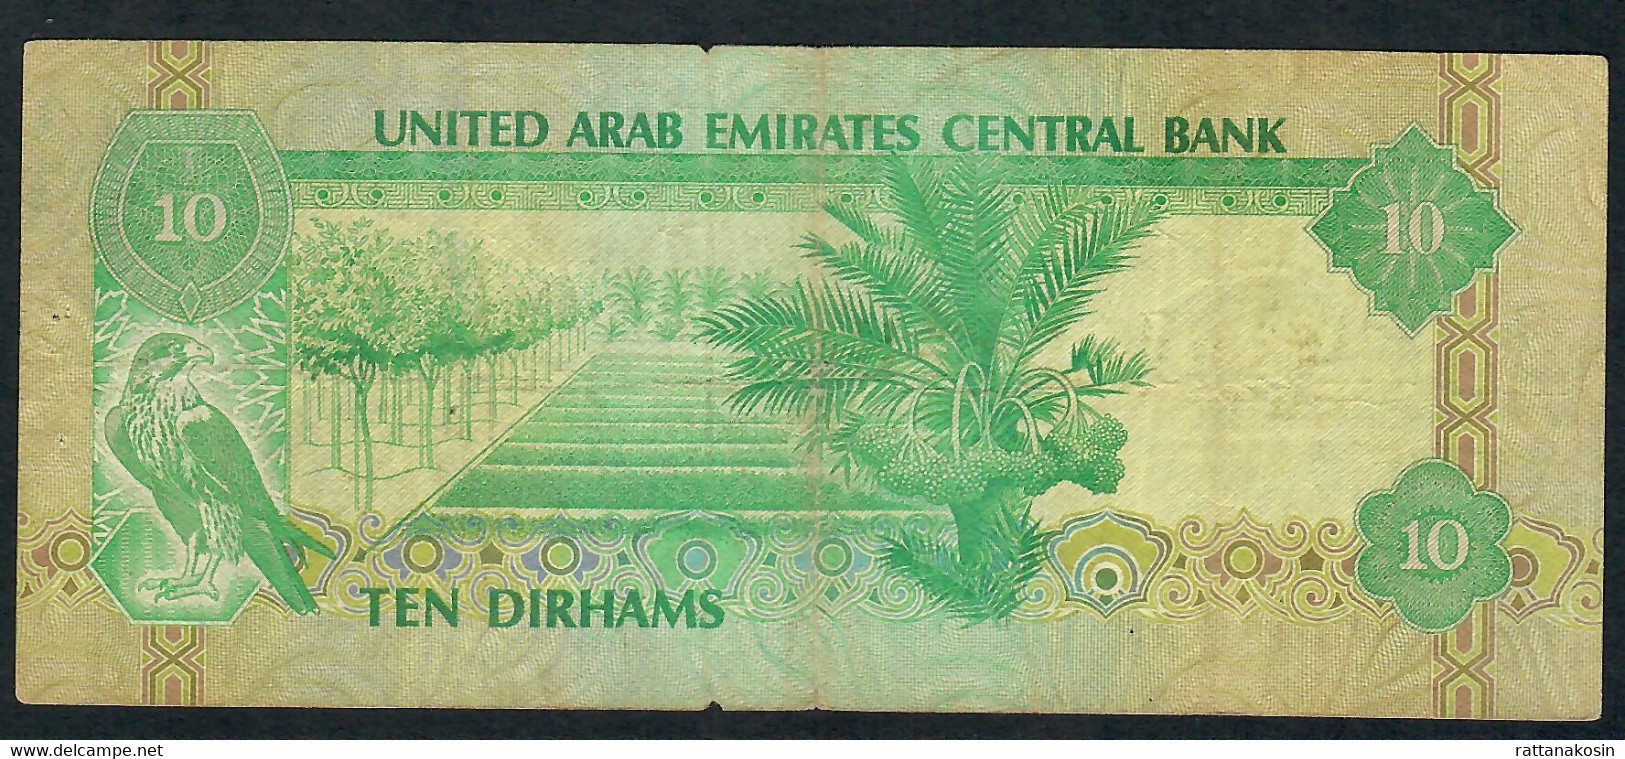 U.A.E. P8 10 DIRHAMS 1982 FINE - Emirats Arabes Unis